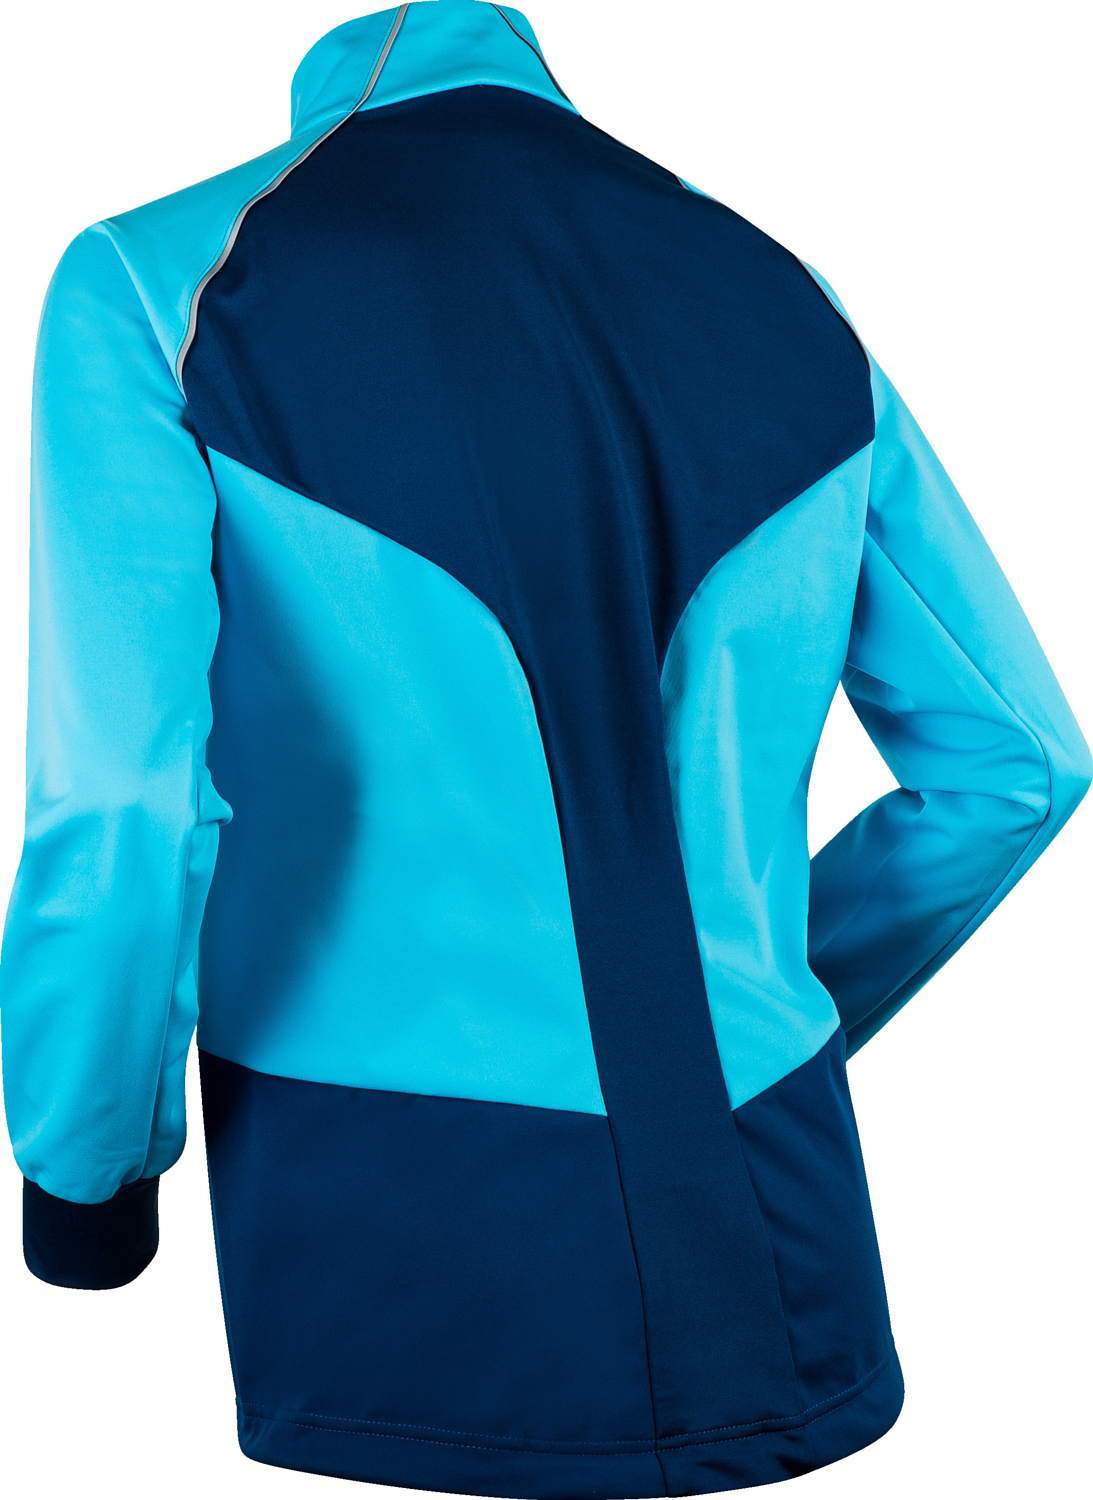 Куртка беговая Bjorn Daehlie 2020-21 Jacket Effect Wmn Aquarius